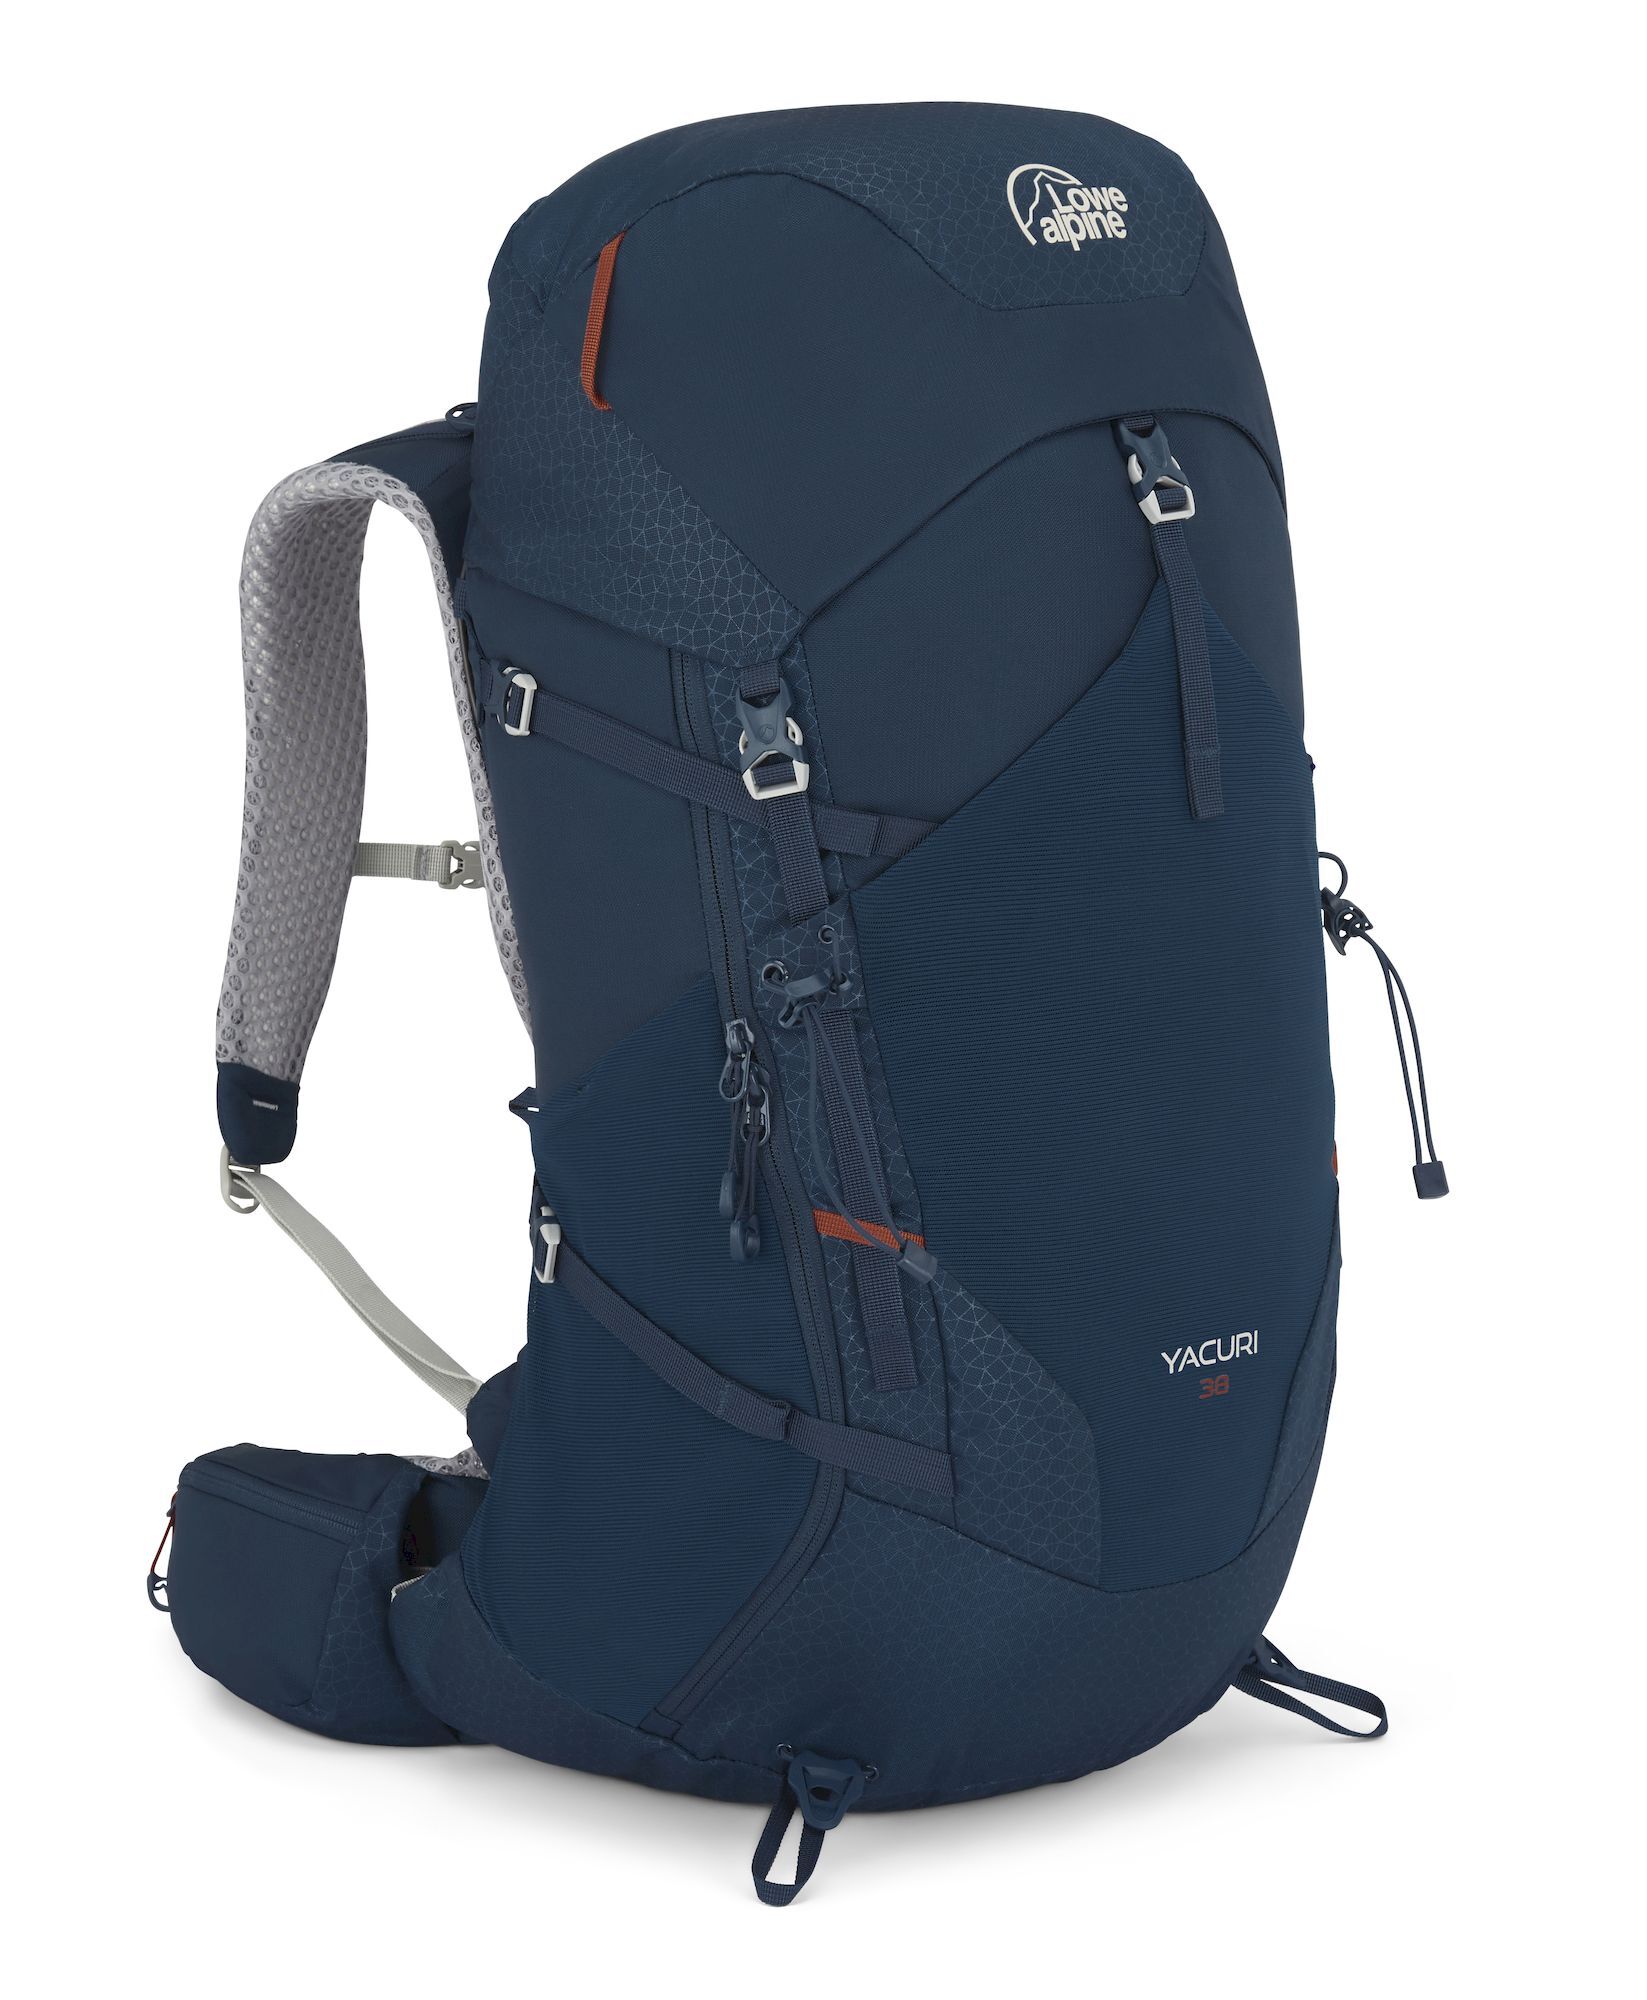 Lowe Alpine Yacuri 38 - Hiking backpack - Men's | Hardloop